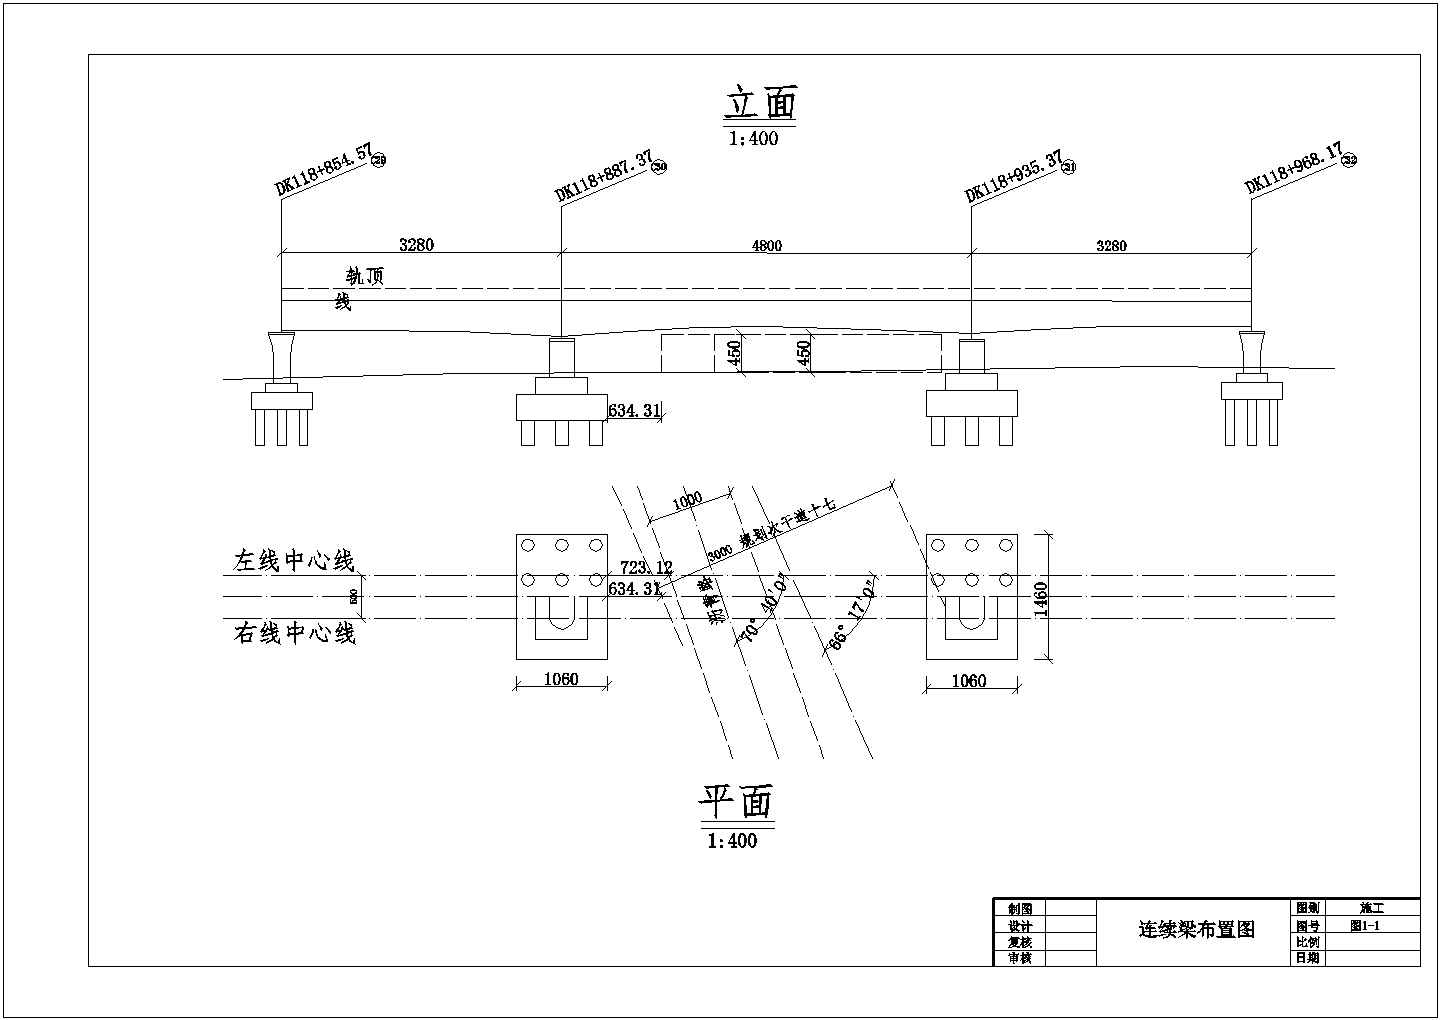 京沪高速铁路土建工程天津特大桥连续箱梁墩(实施)施工组织设计